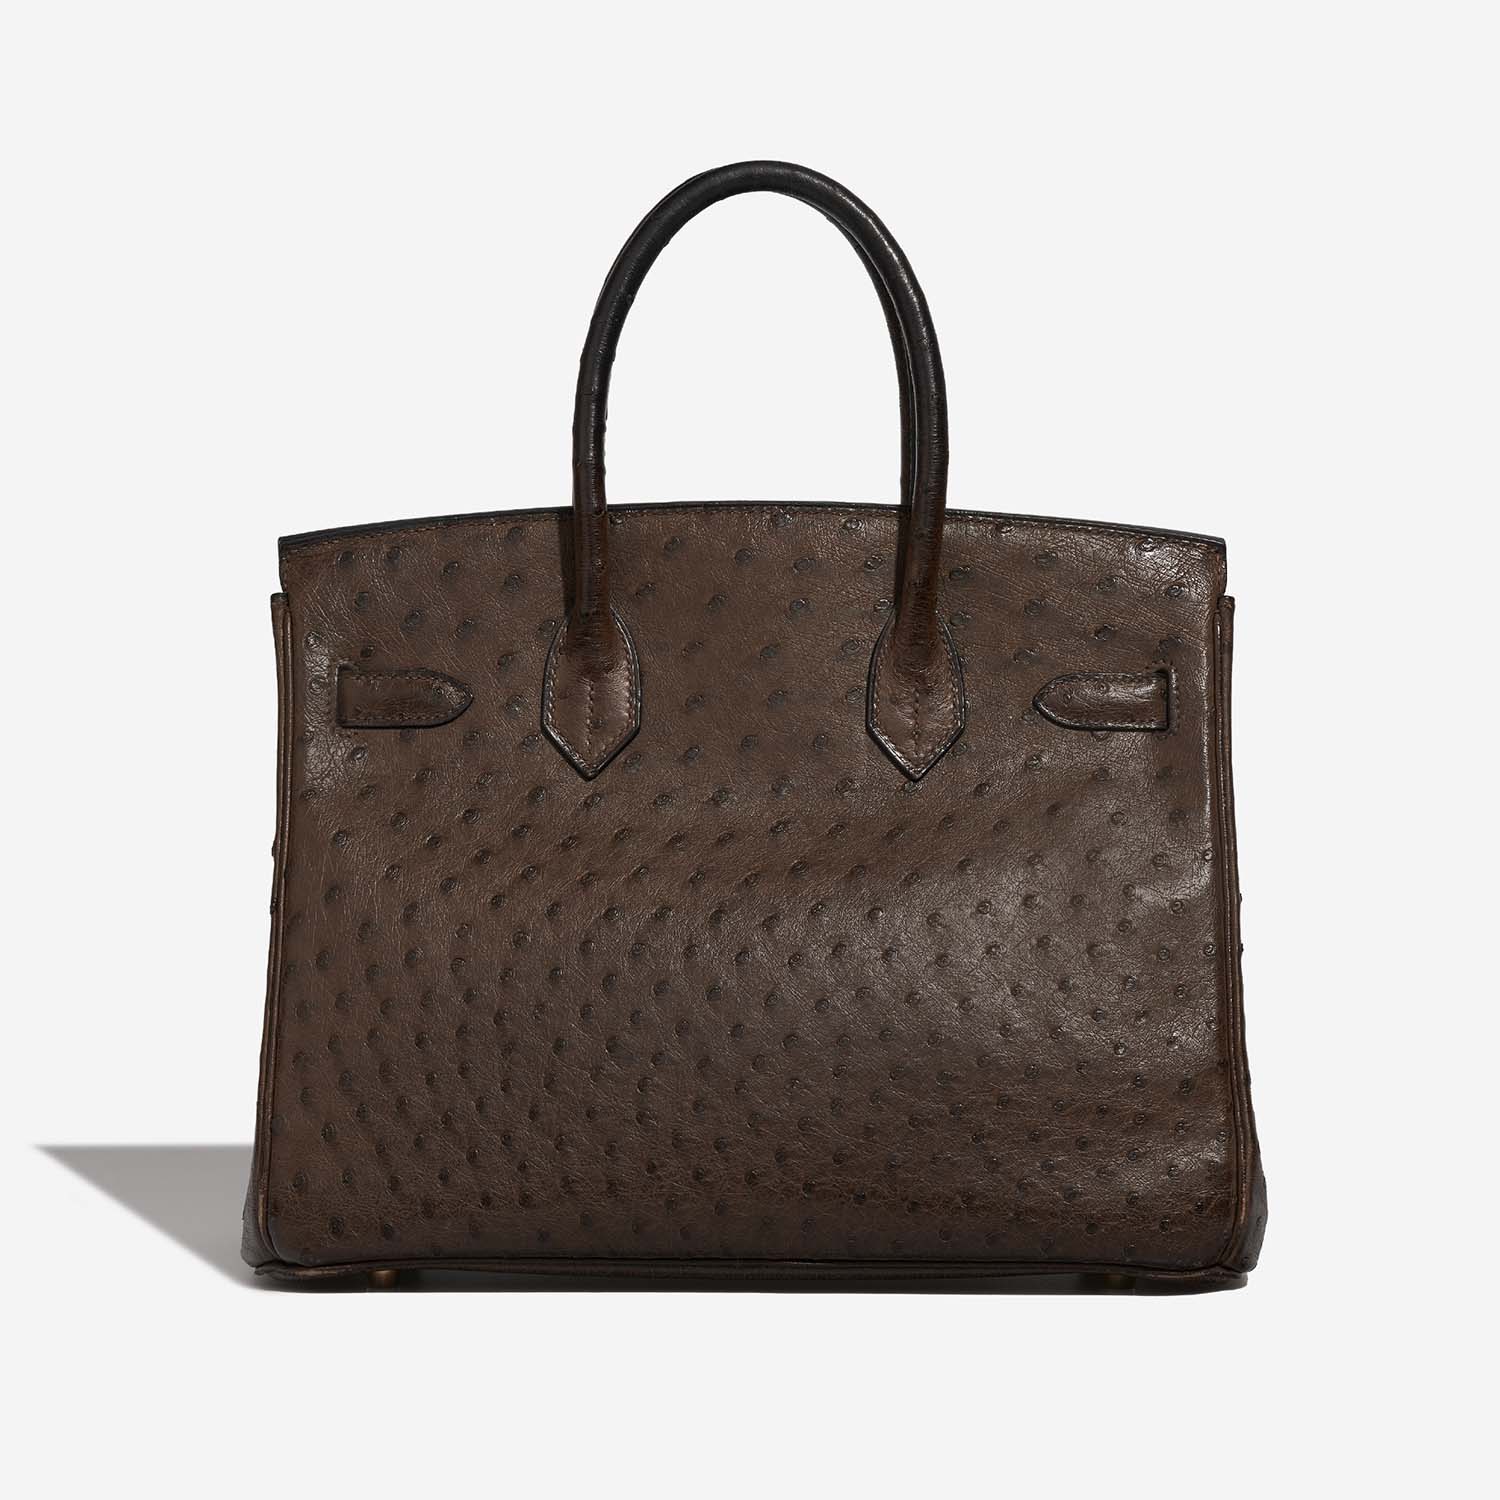 Hermès Birkin 30 Marron Back | Verkaufen Sie Ihre Designer-Tasche auf Saclab.com